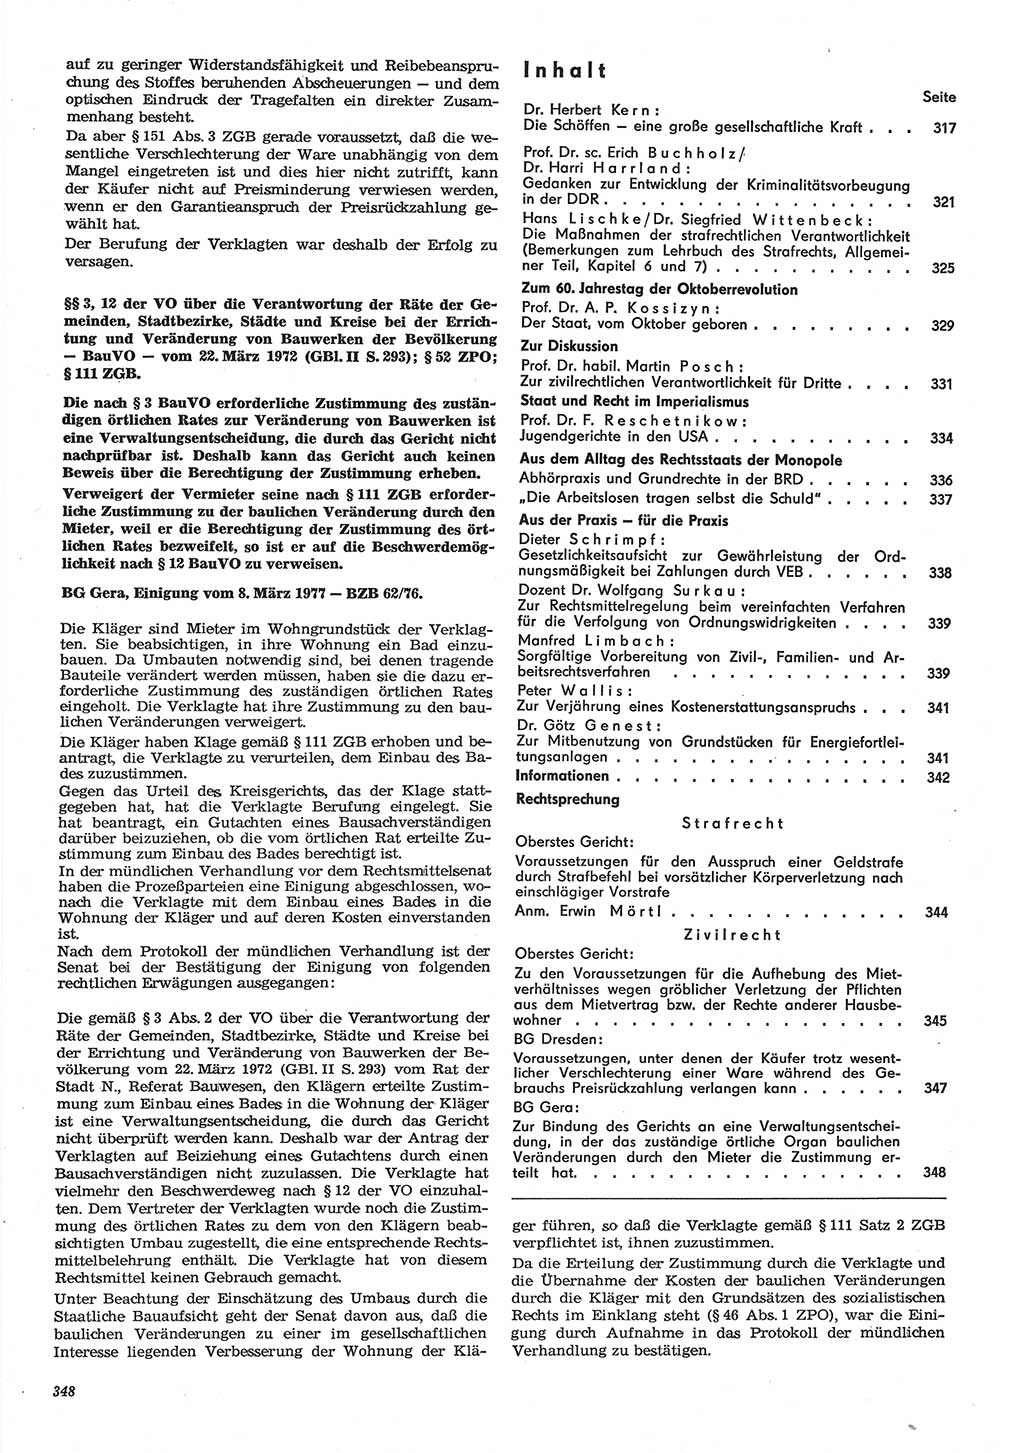 Neue Justiz (NJ), Zeitschrift für Recht und Rechtswissenschaft-Zeitschrift, sozialistisches Recht und Gesetzlichkeit, 31. Jahrgang 1977, Seite 348 (NJ DDR 1977, S. 348)